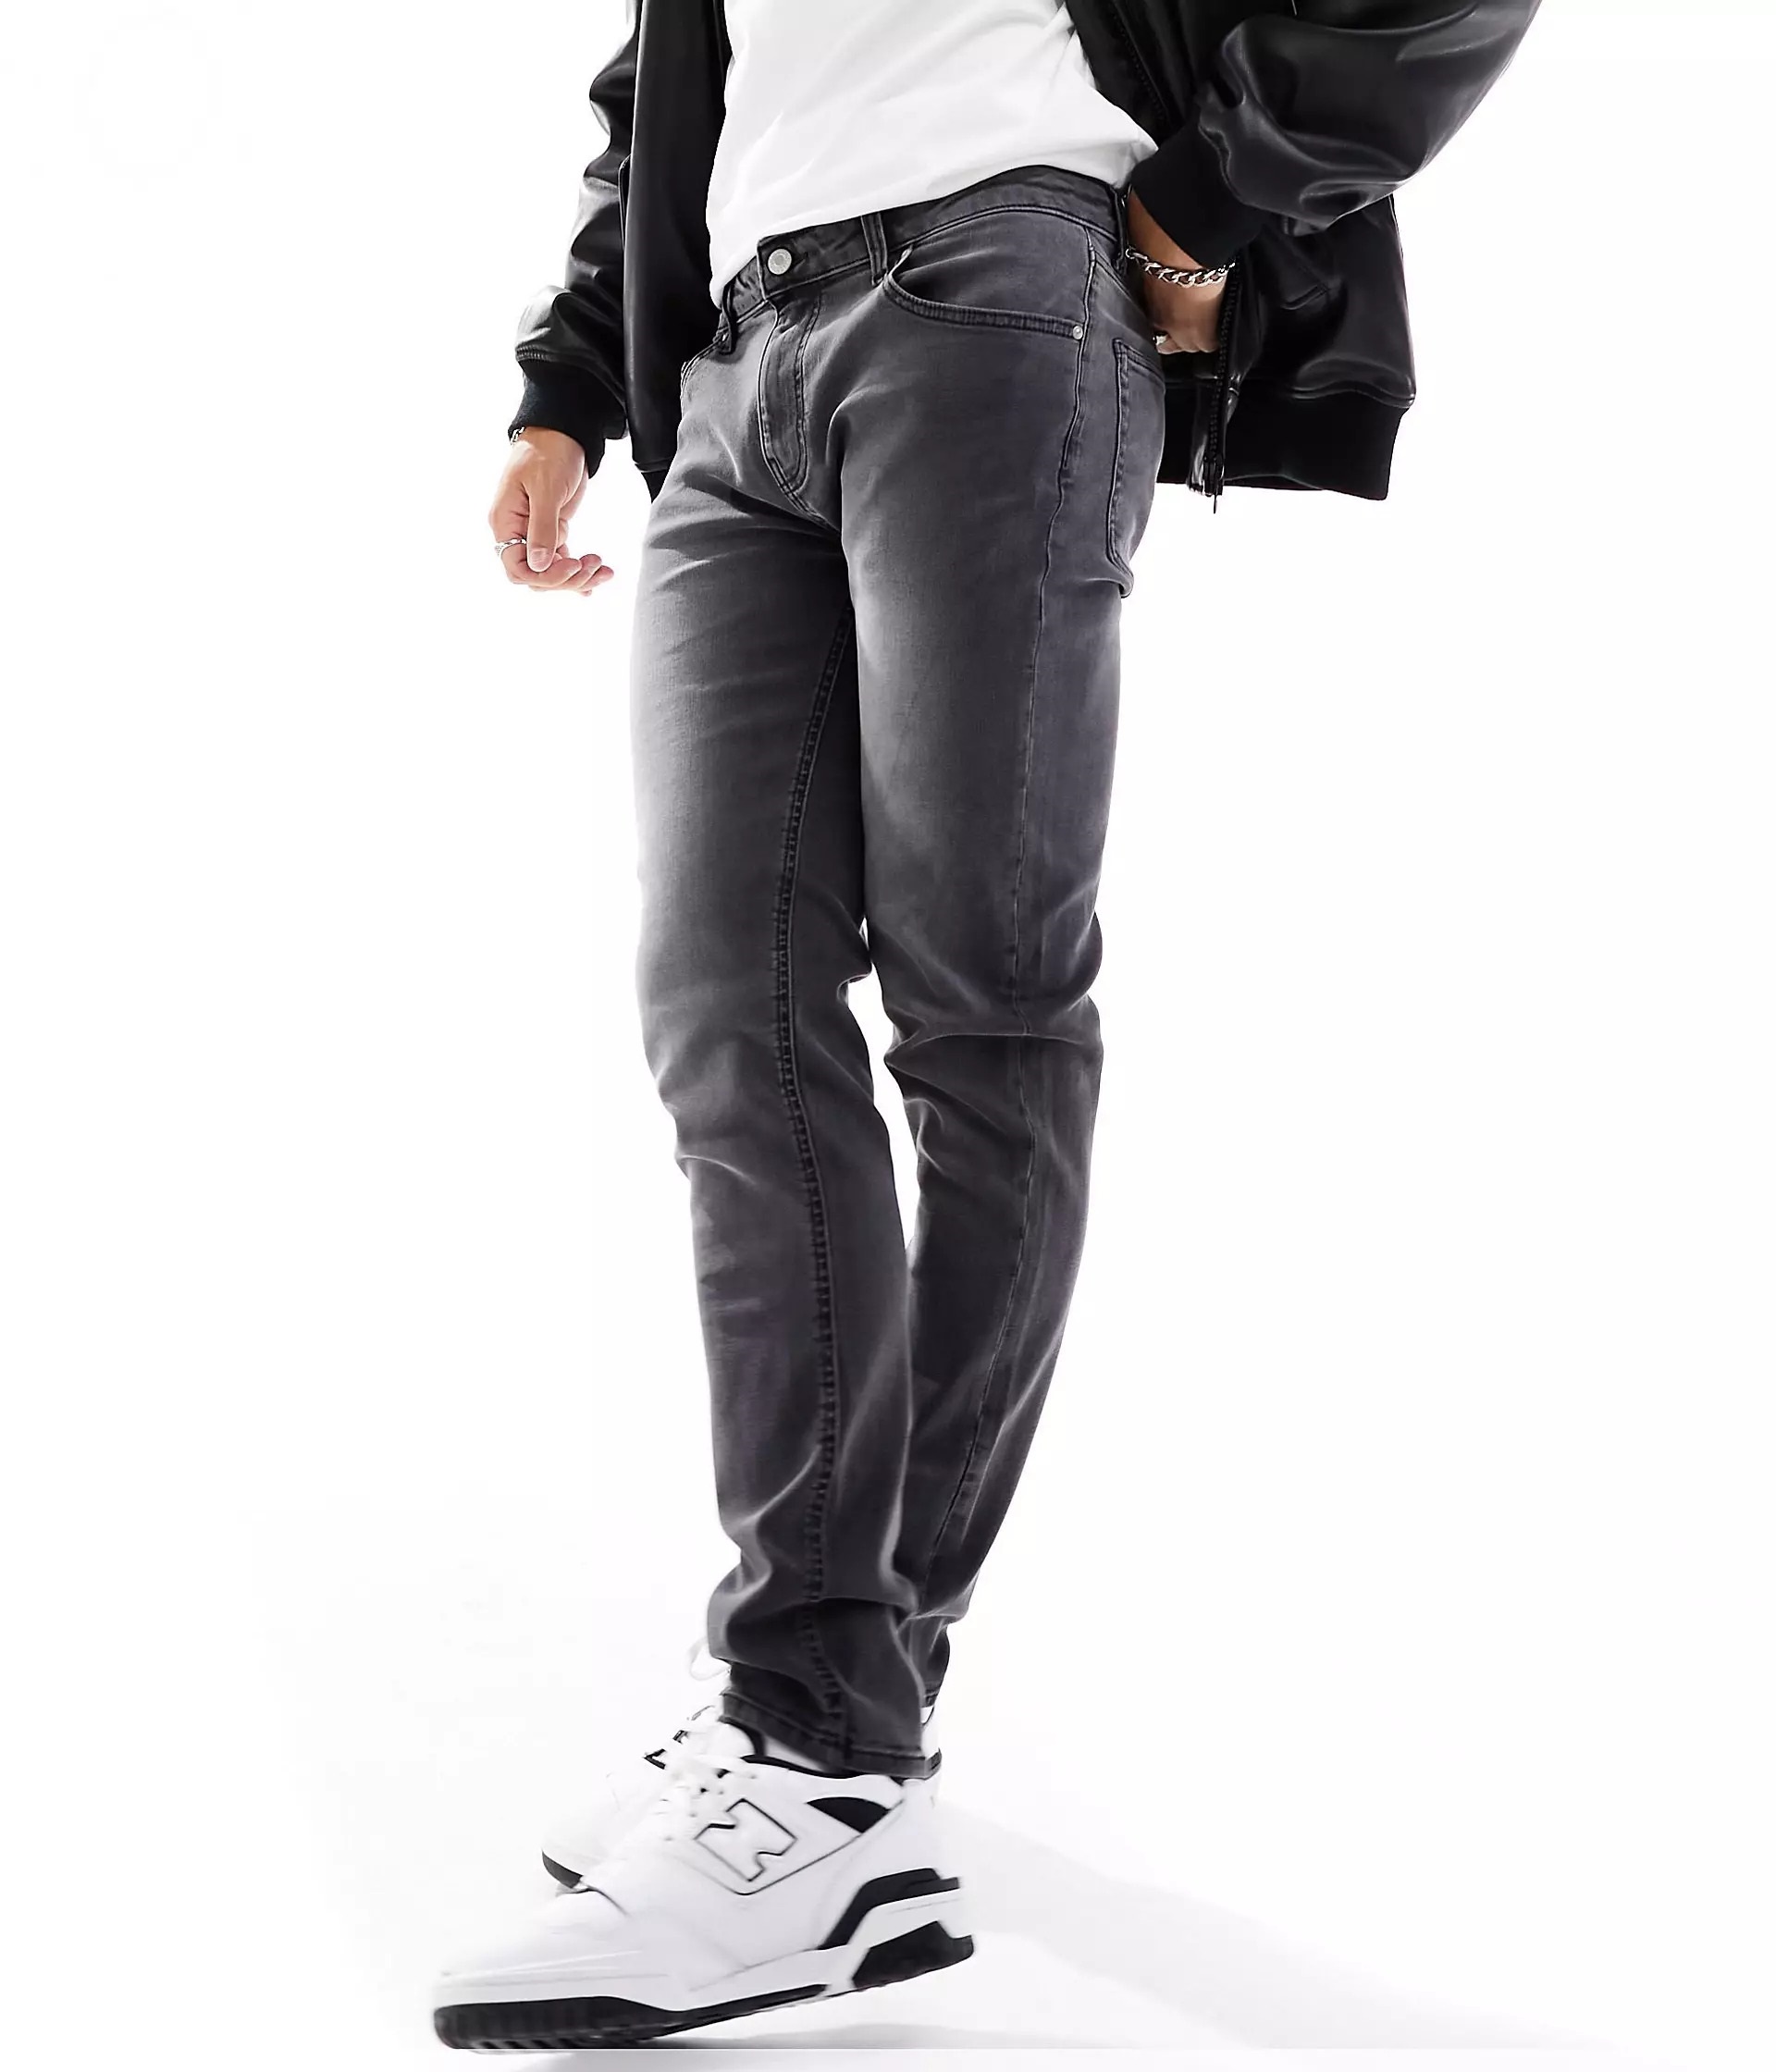 Джинсы Asos Design Skinny, серый джинсы скинни fracomina прилегающие стрейч размер 27 белый